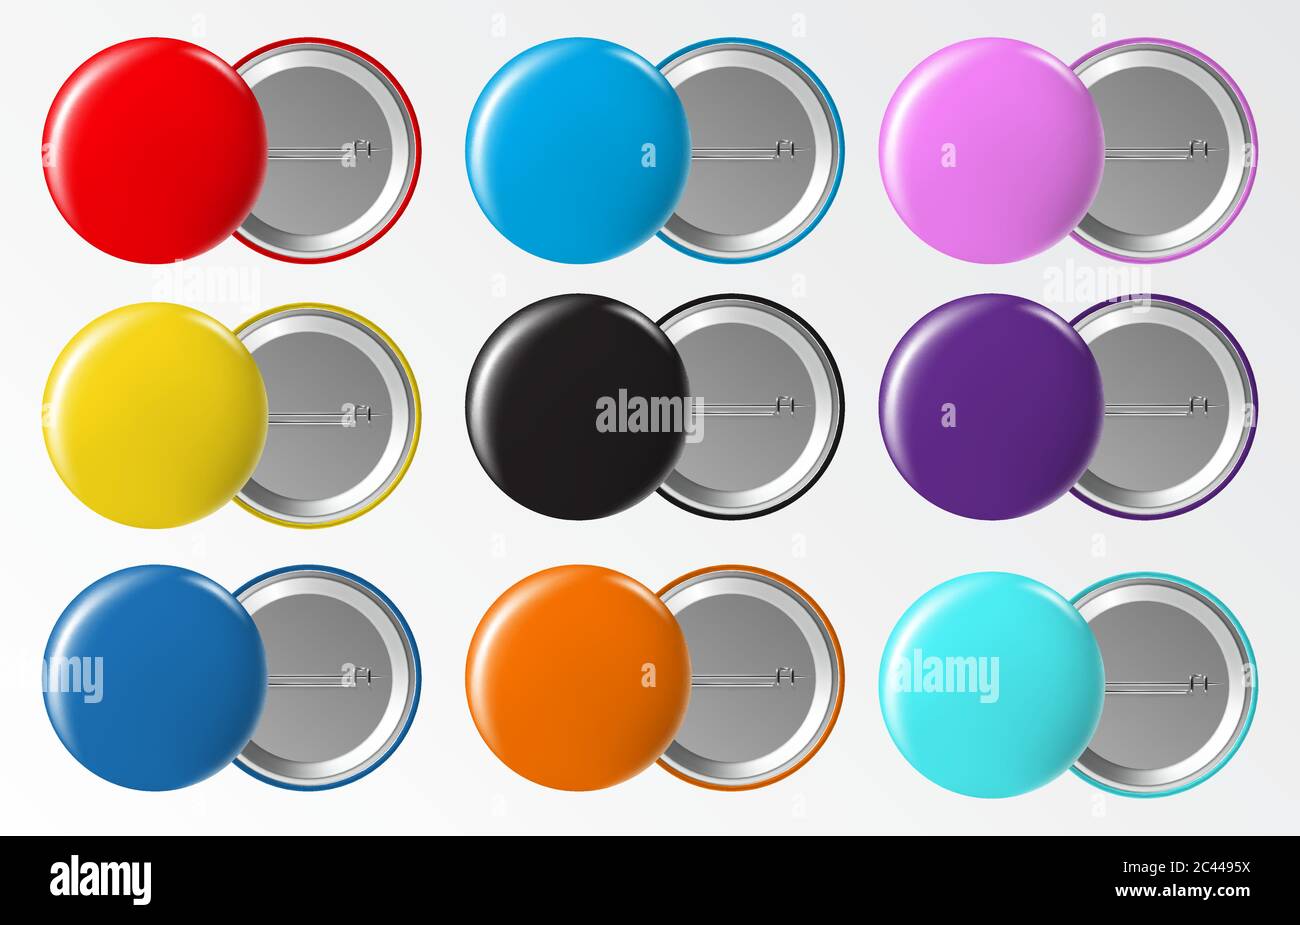 Pin Button Badge Ø38mm Éclaboussures Tache Encre Colorful Ink Splashes 